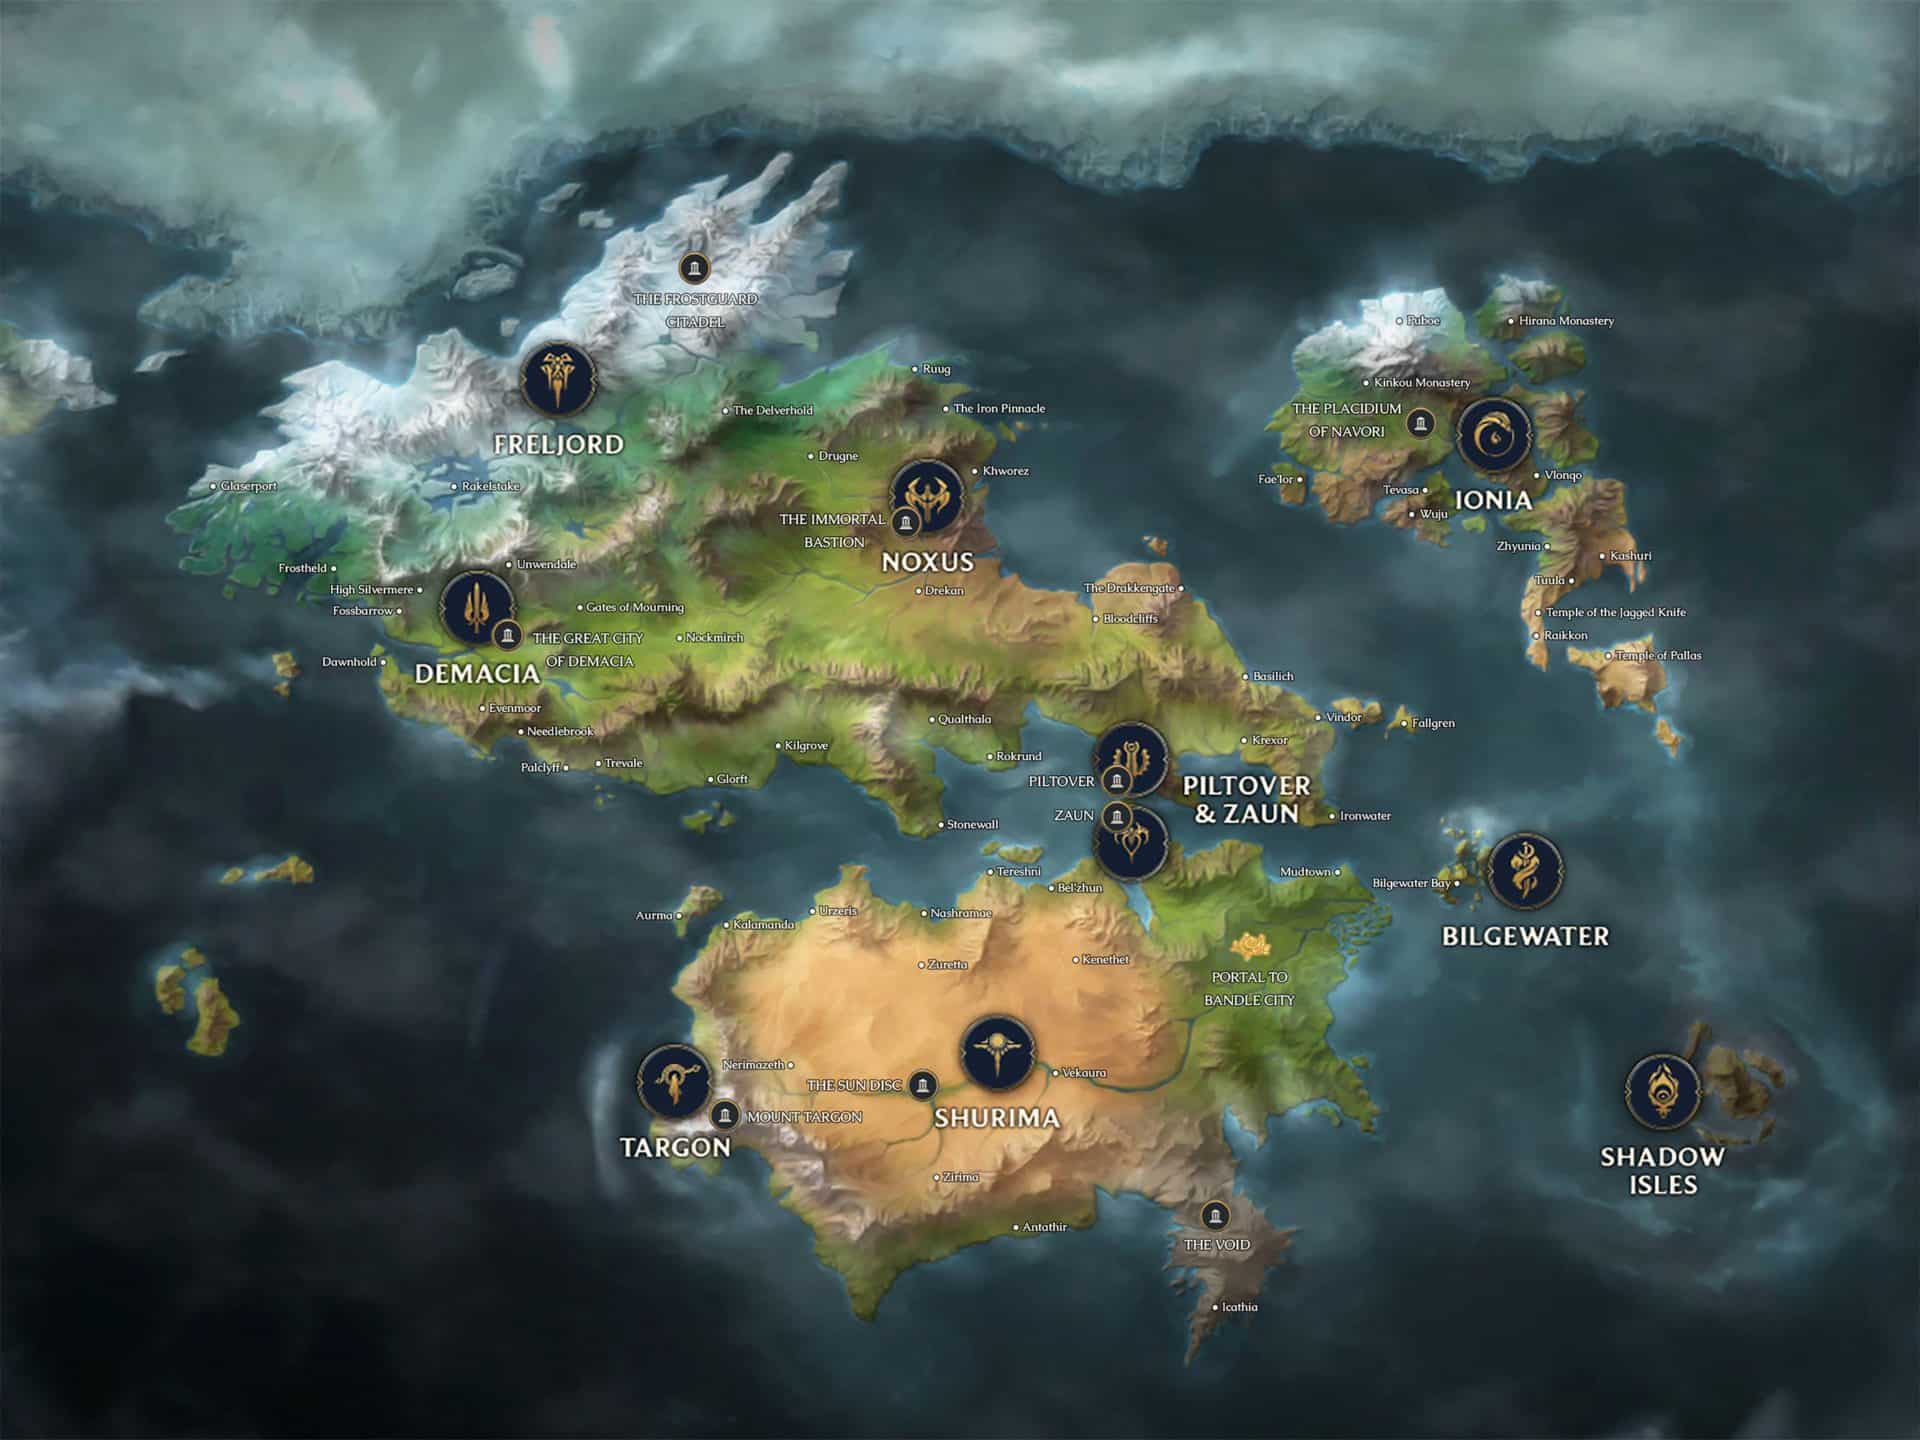 Die vollständige Karte von Runeterra, der Welt der League of Legends